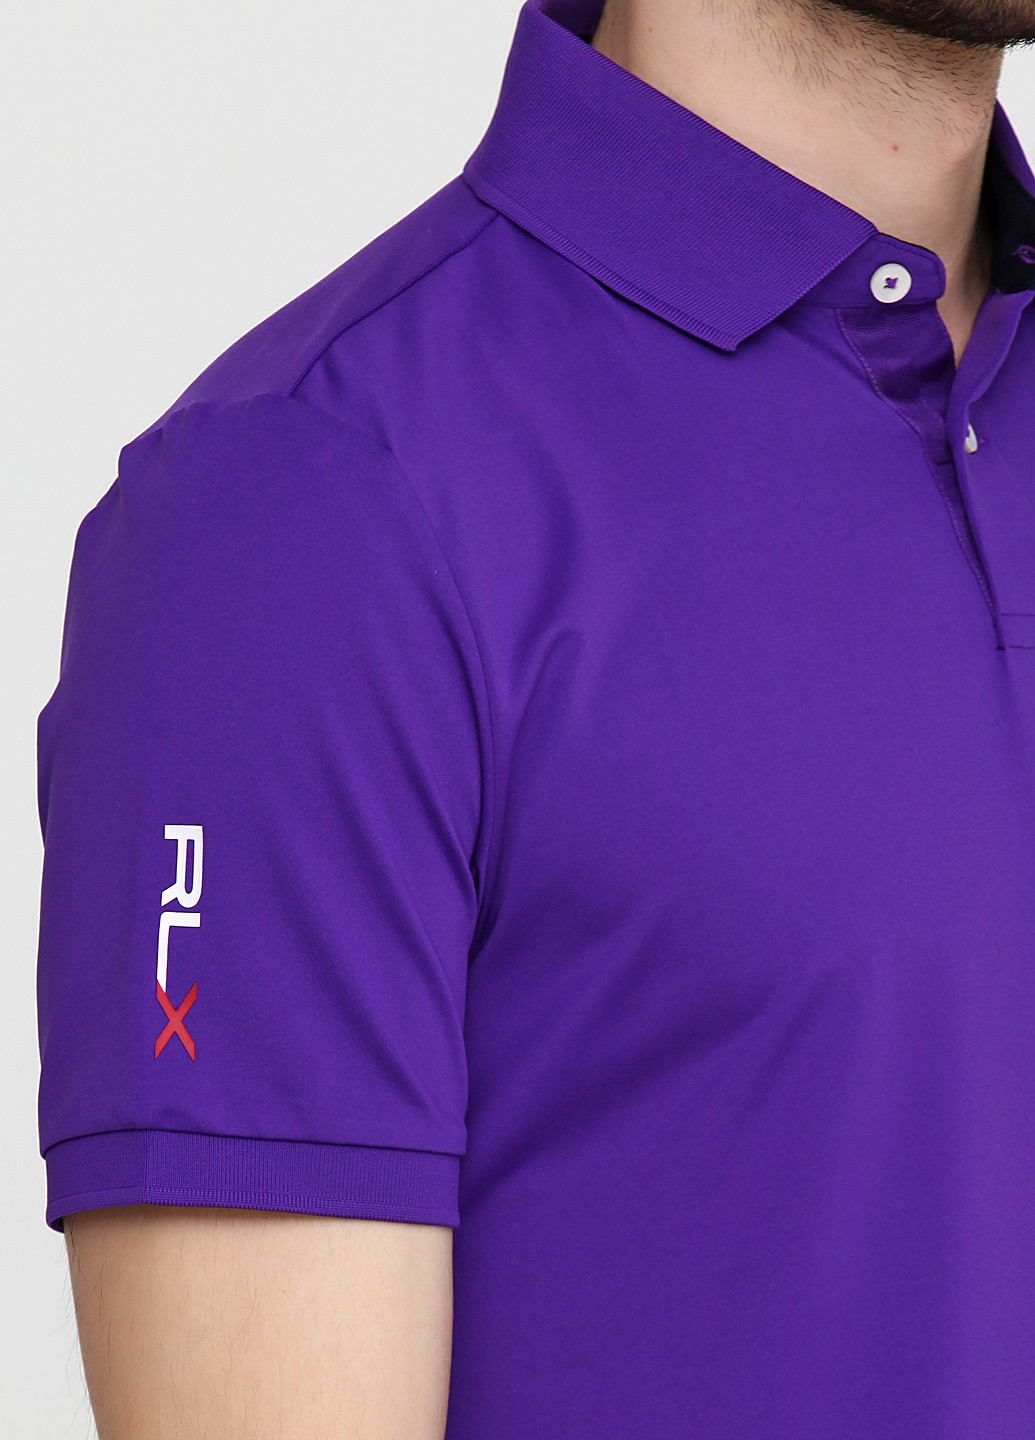 Фиолетовая футболка-поло для мужчин Ralph Lauren с логотипом